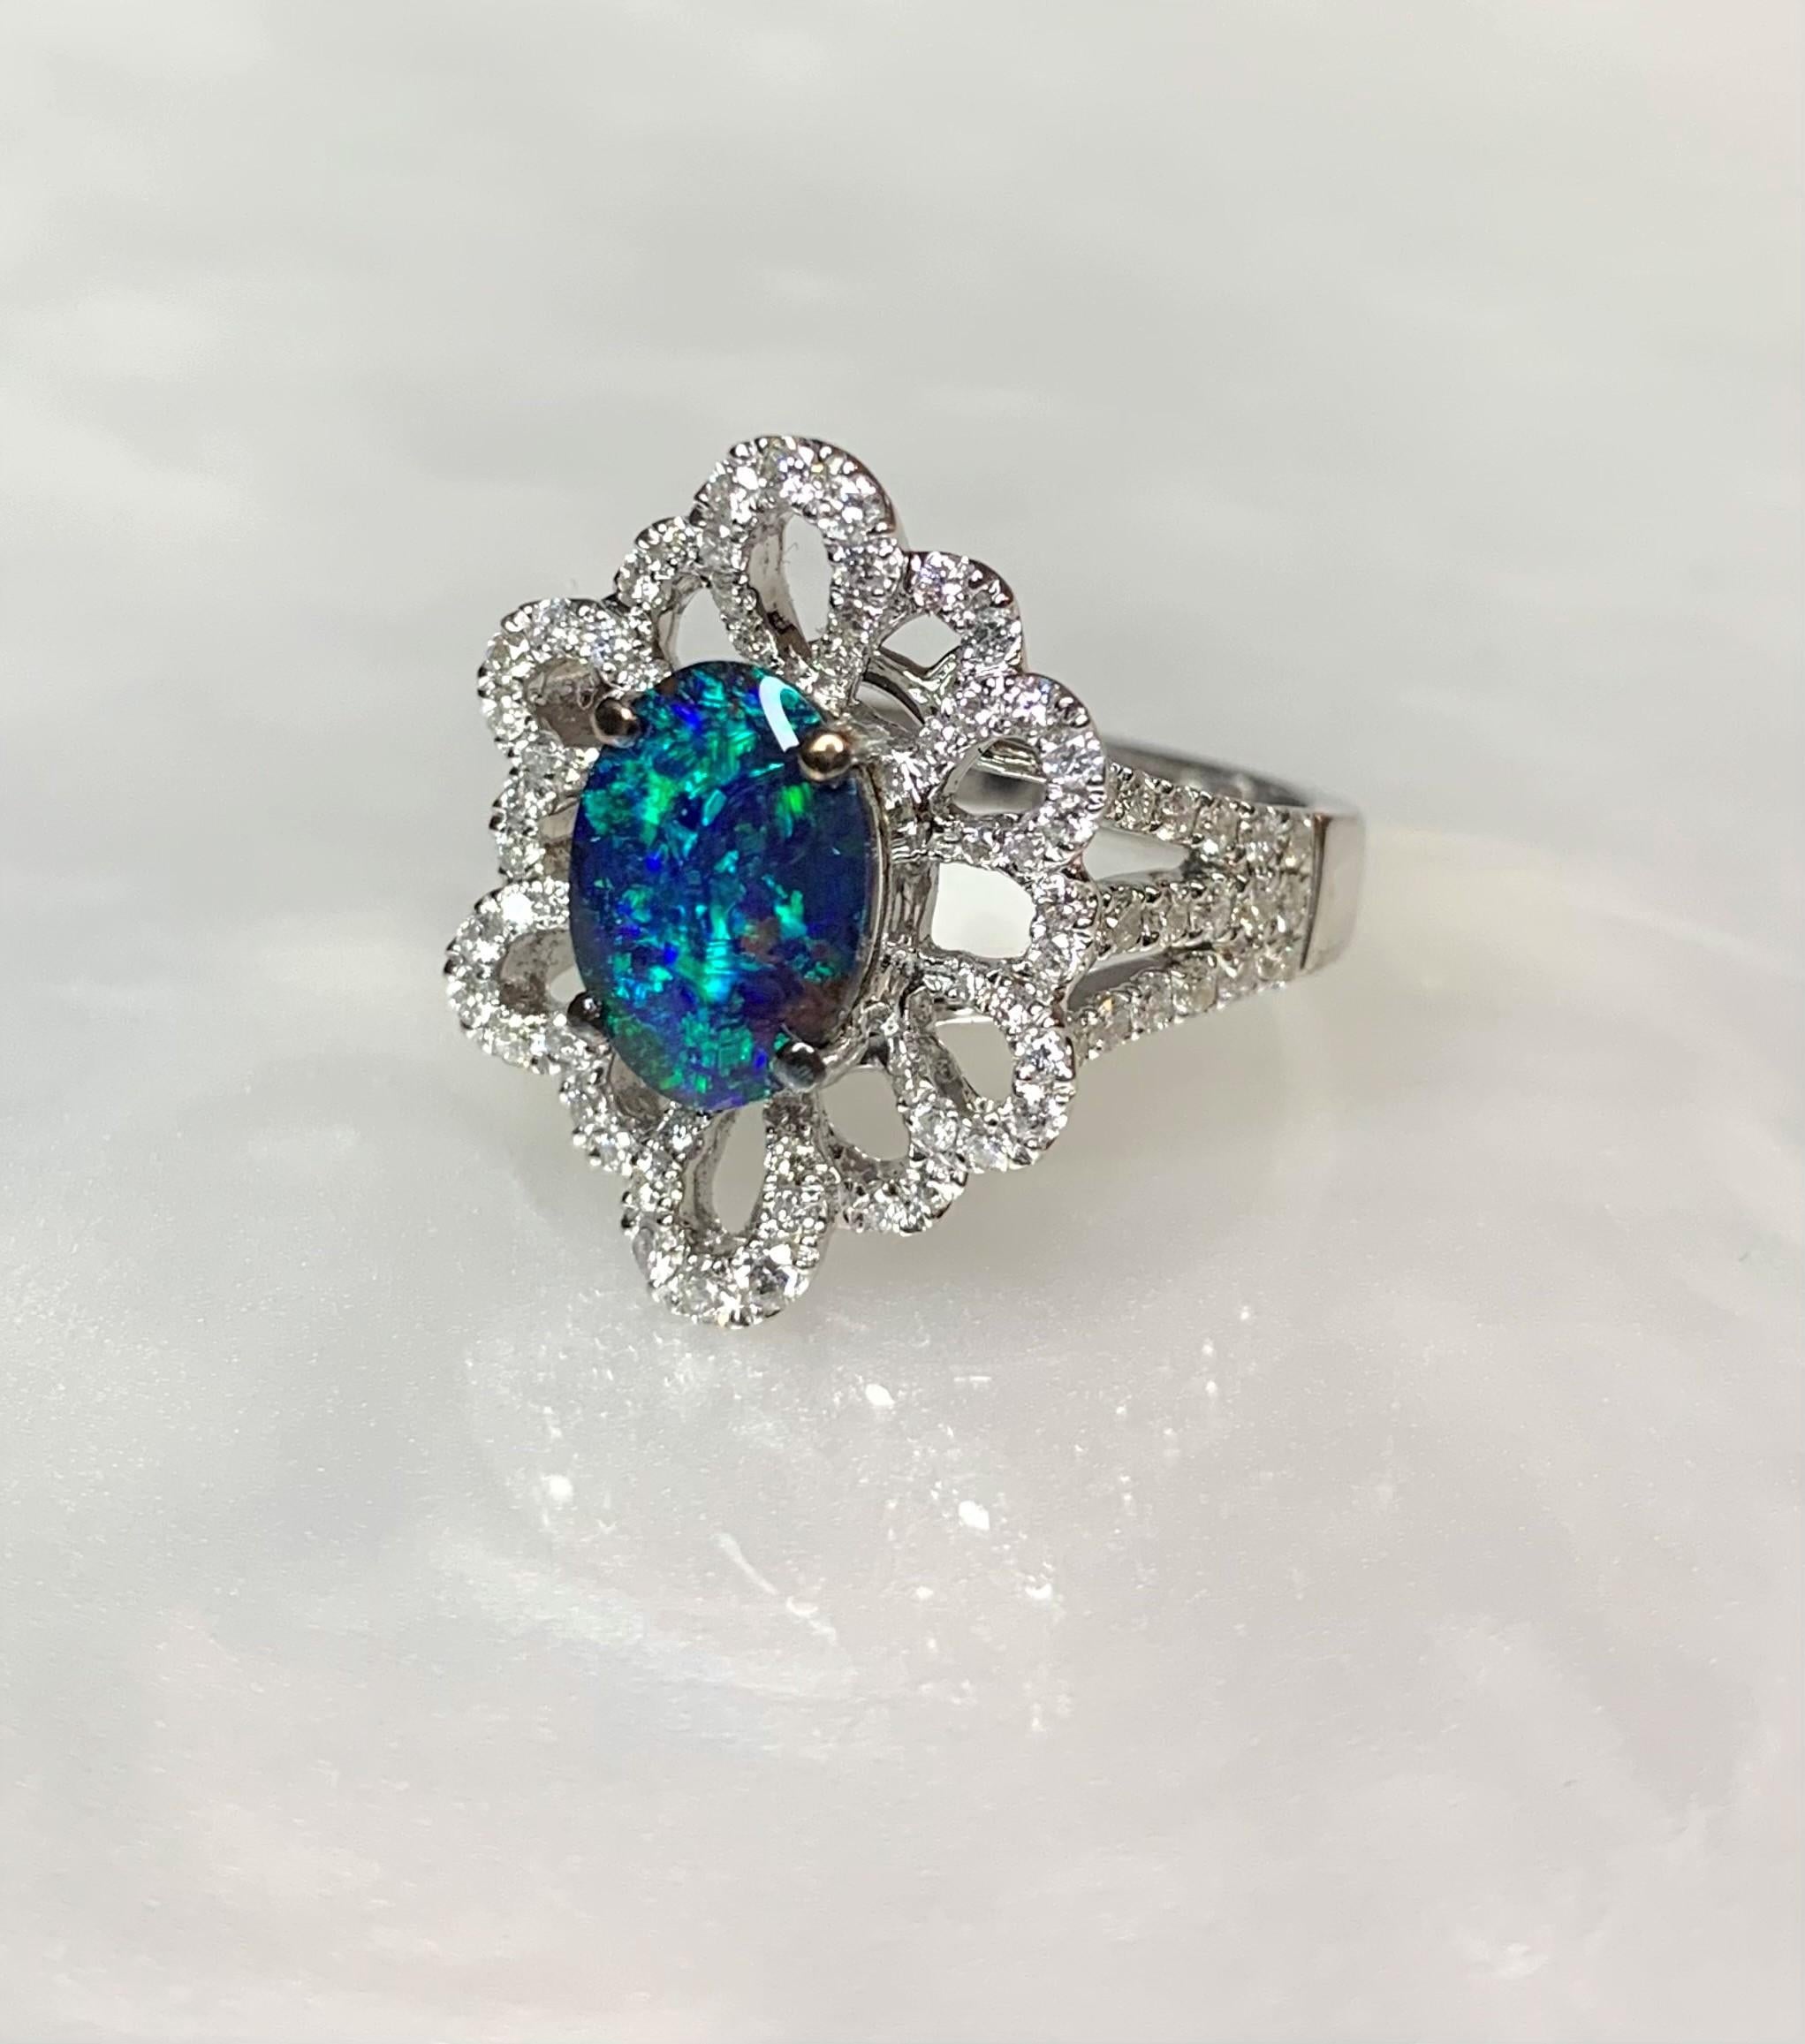 Ein phänomenaler australischer Schwarzopalring mit einem leuchtend blaugrünen ovalen Mittelstein von 4,86 Karat, umgeben von außergewöhnlich funkelnden weißen Diamanten von 1,82 Karat. Letzter Aufruf für diesen exquisiten Sammlertraum.

*Ungefähre